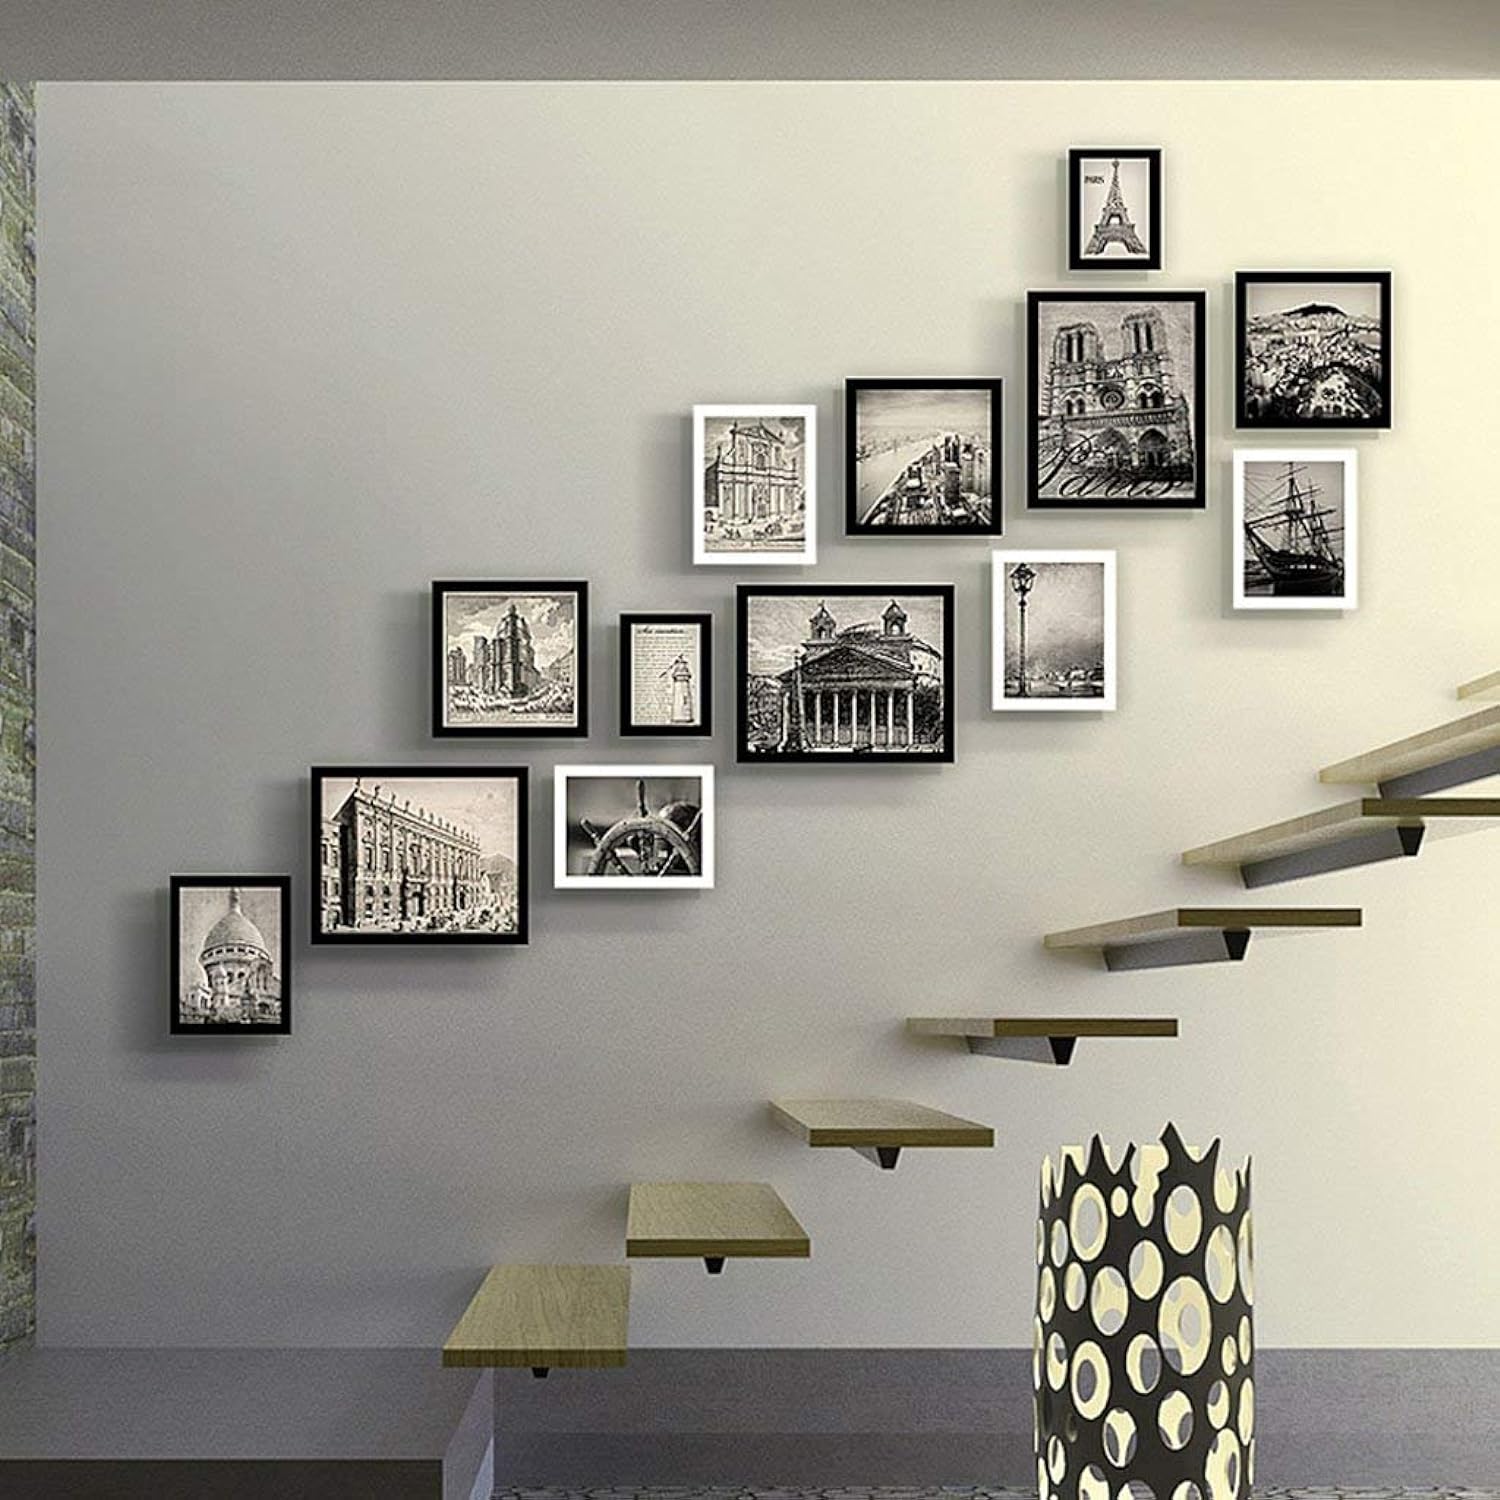 Развешанные картины. Фоторамки на стене лестницы. Композиция из картинок на стене. Композиции на стене над лестницей. Развеска картин на лестнице.